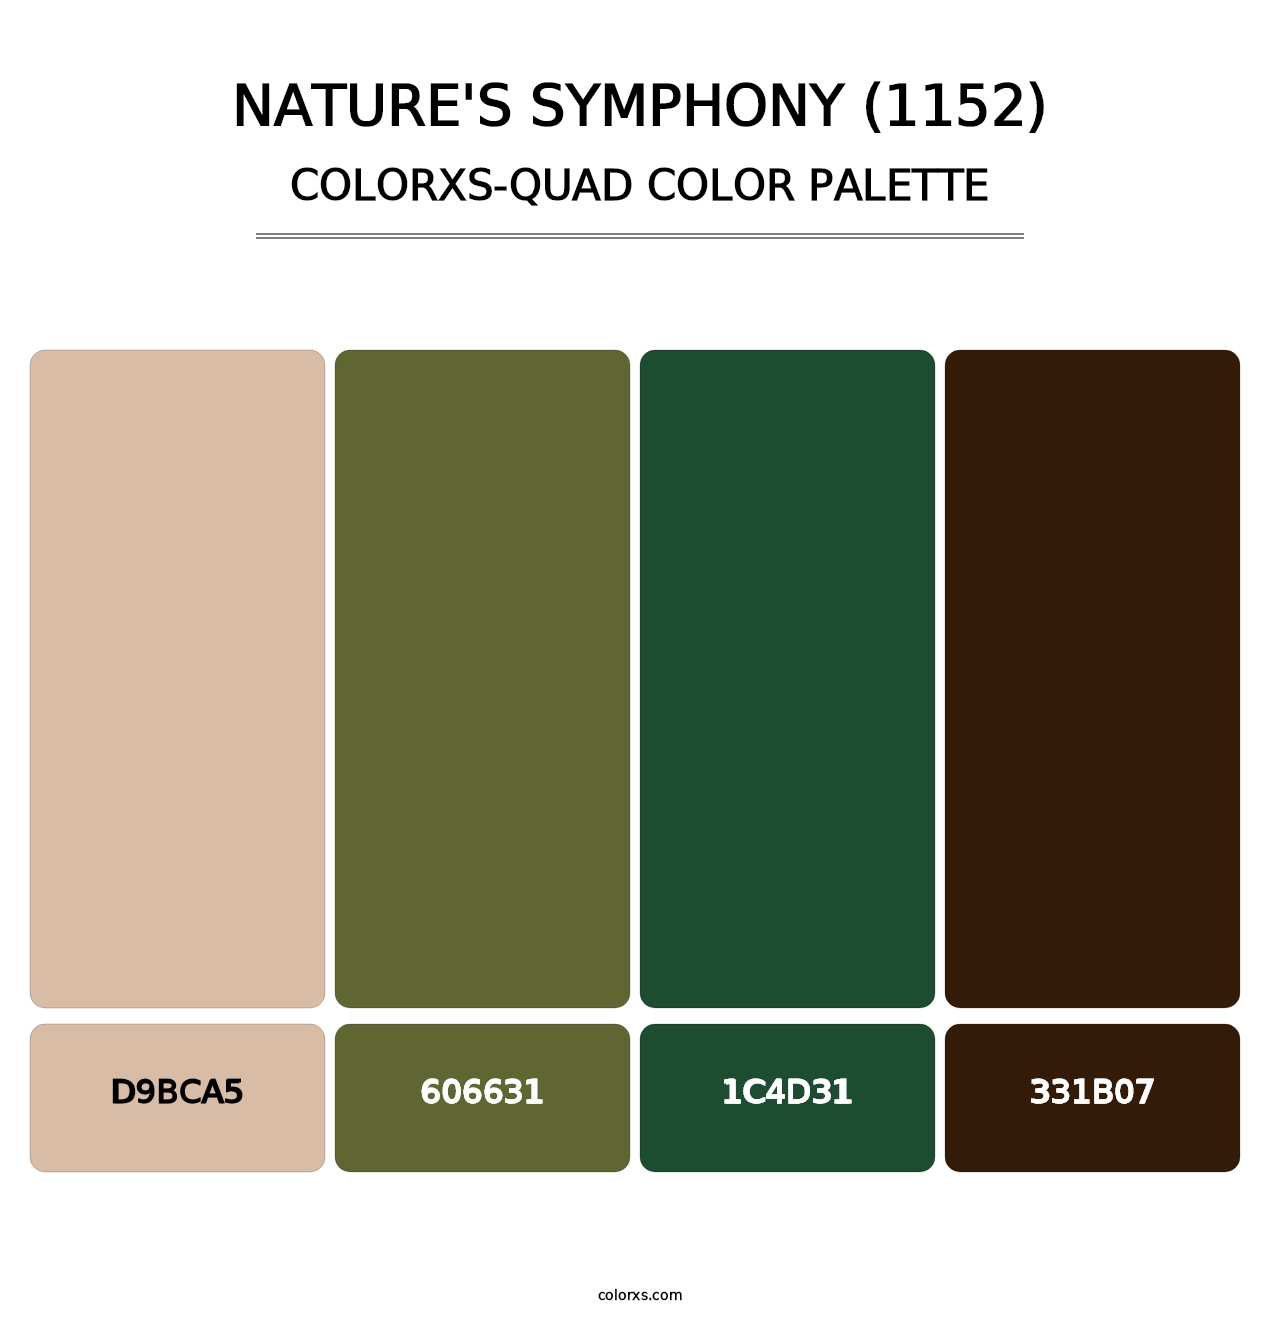 Nature's Symphony (1152) - Colorxs Quad Palette